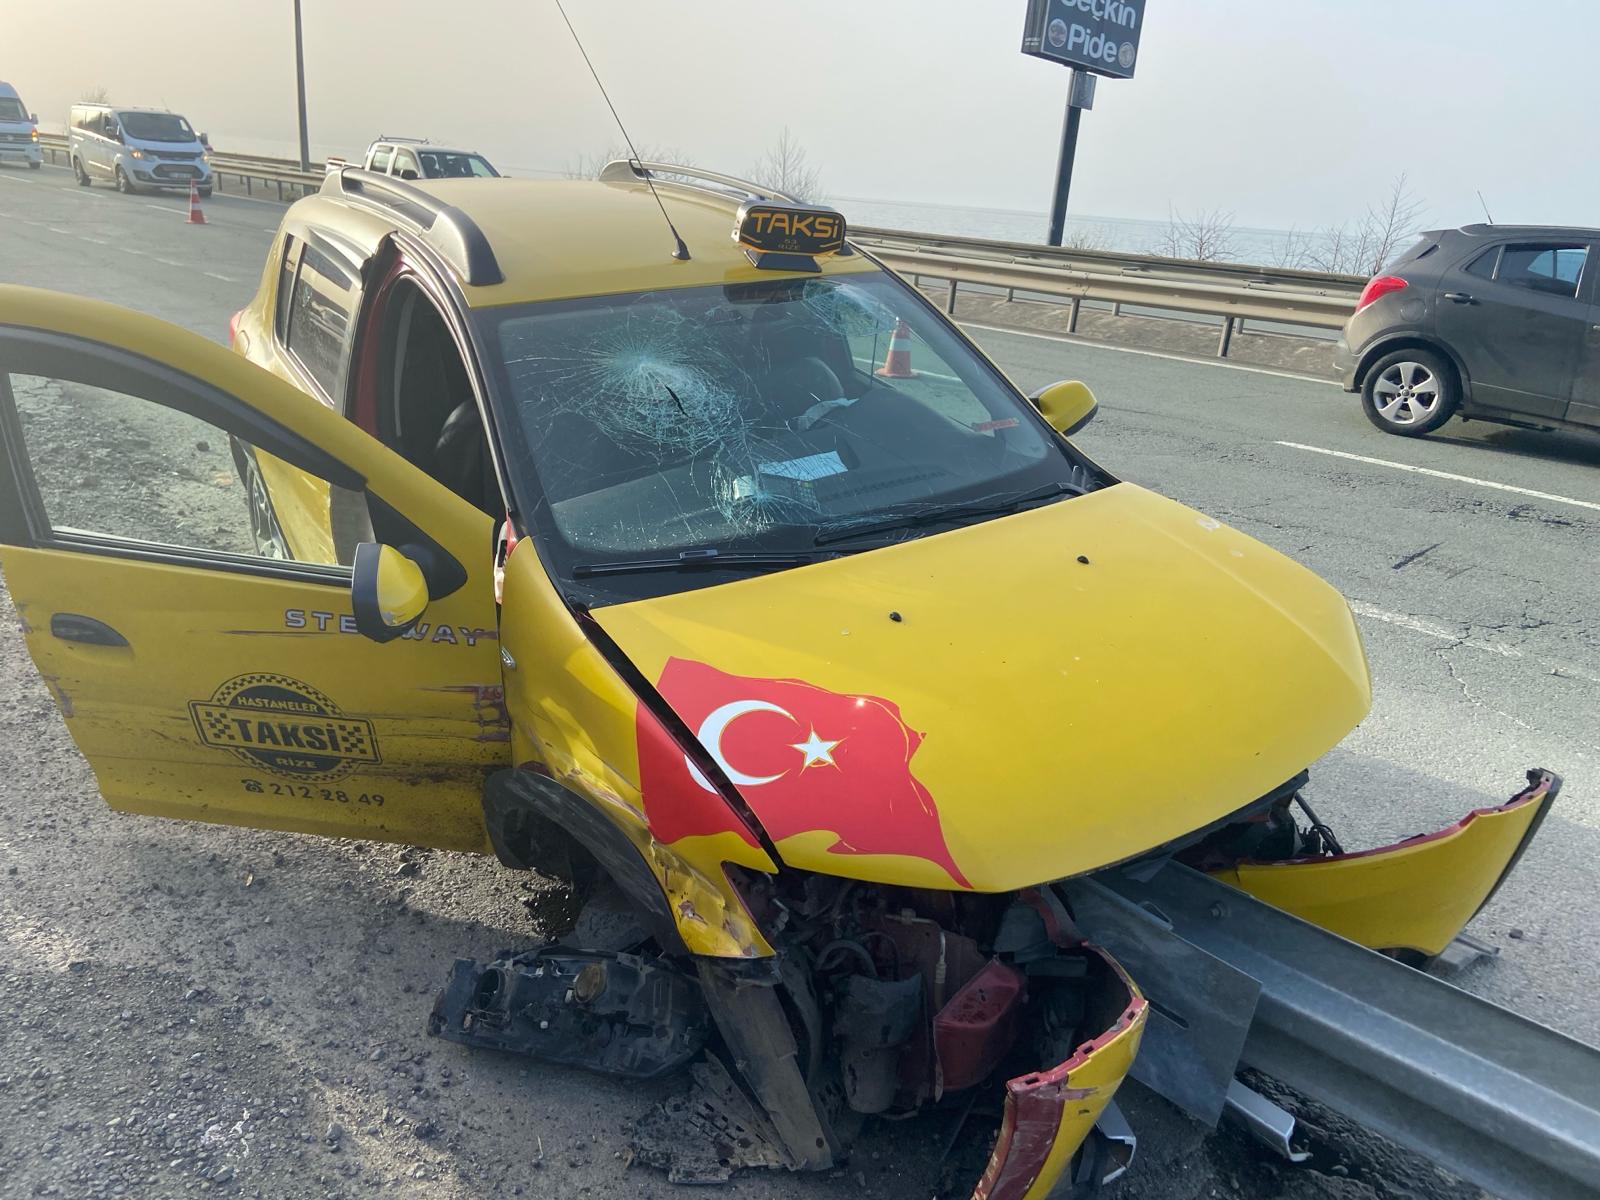 Rize Mermerdelen mahallesi muhtarı Seymenoğlu, trafik kazası geçirdi